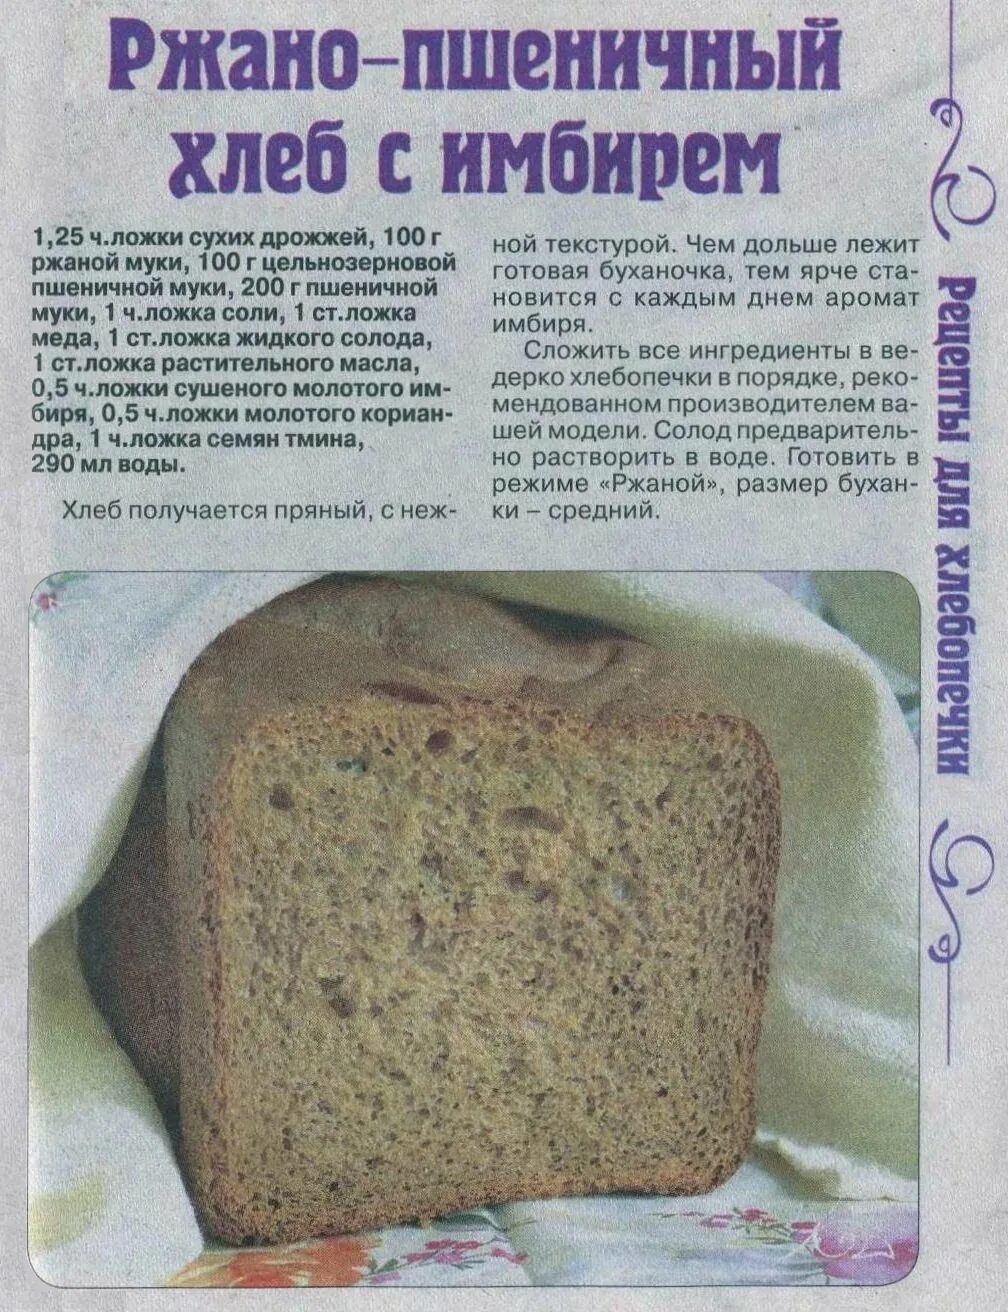 Рецепт хлеба в хлебопечке. Тесто на хлеб в хлебопечке. Домашний хлеб в хлебопечке. Рецептура ржаного хлеба. Старые рецепты хлеба без дрожжей